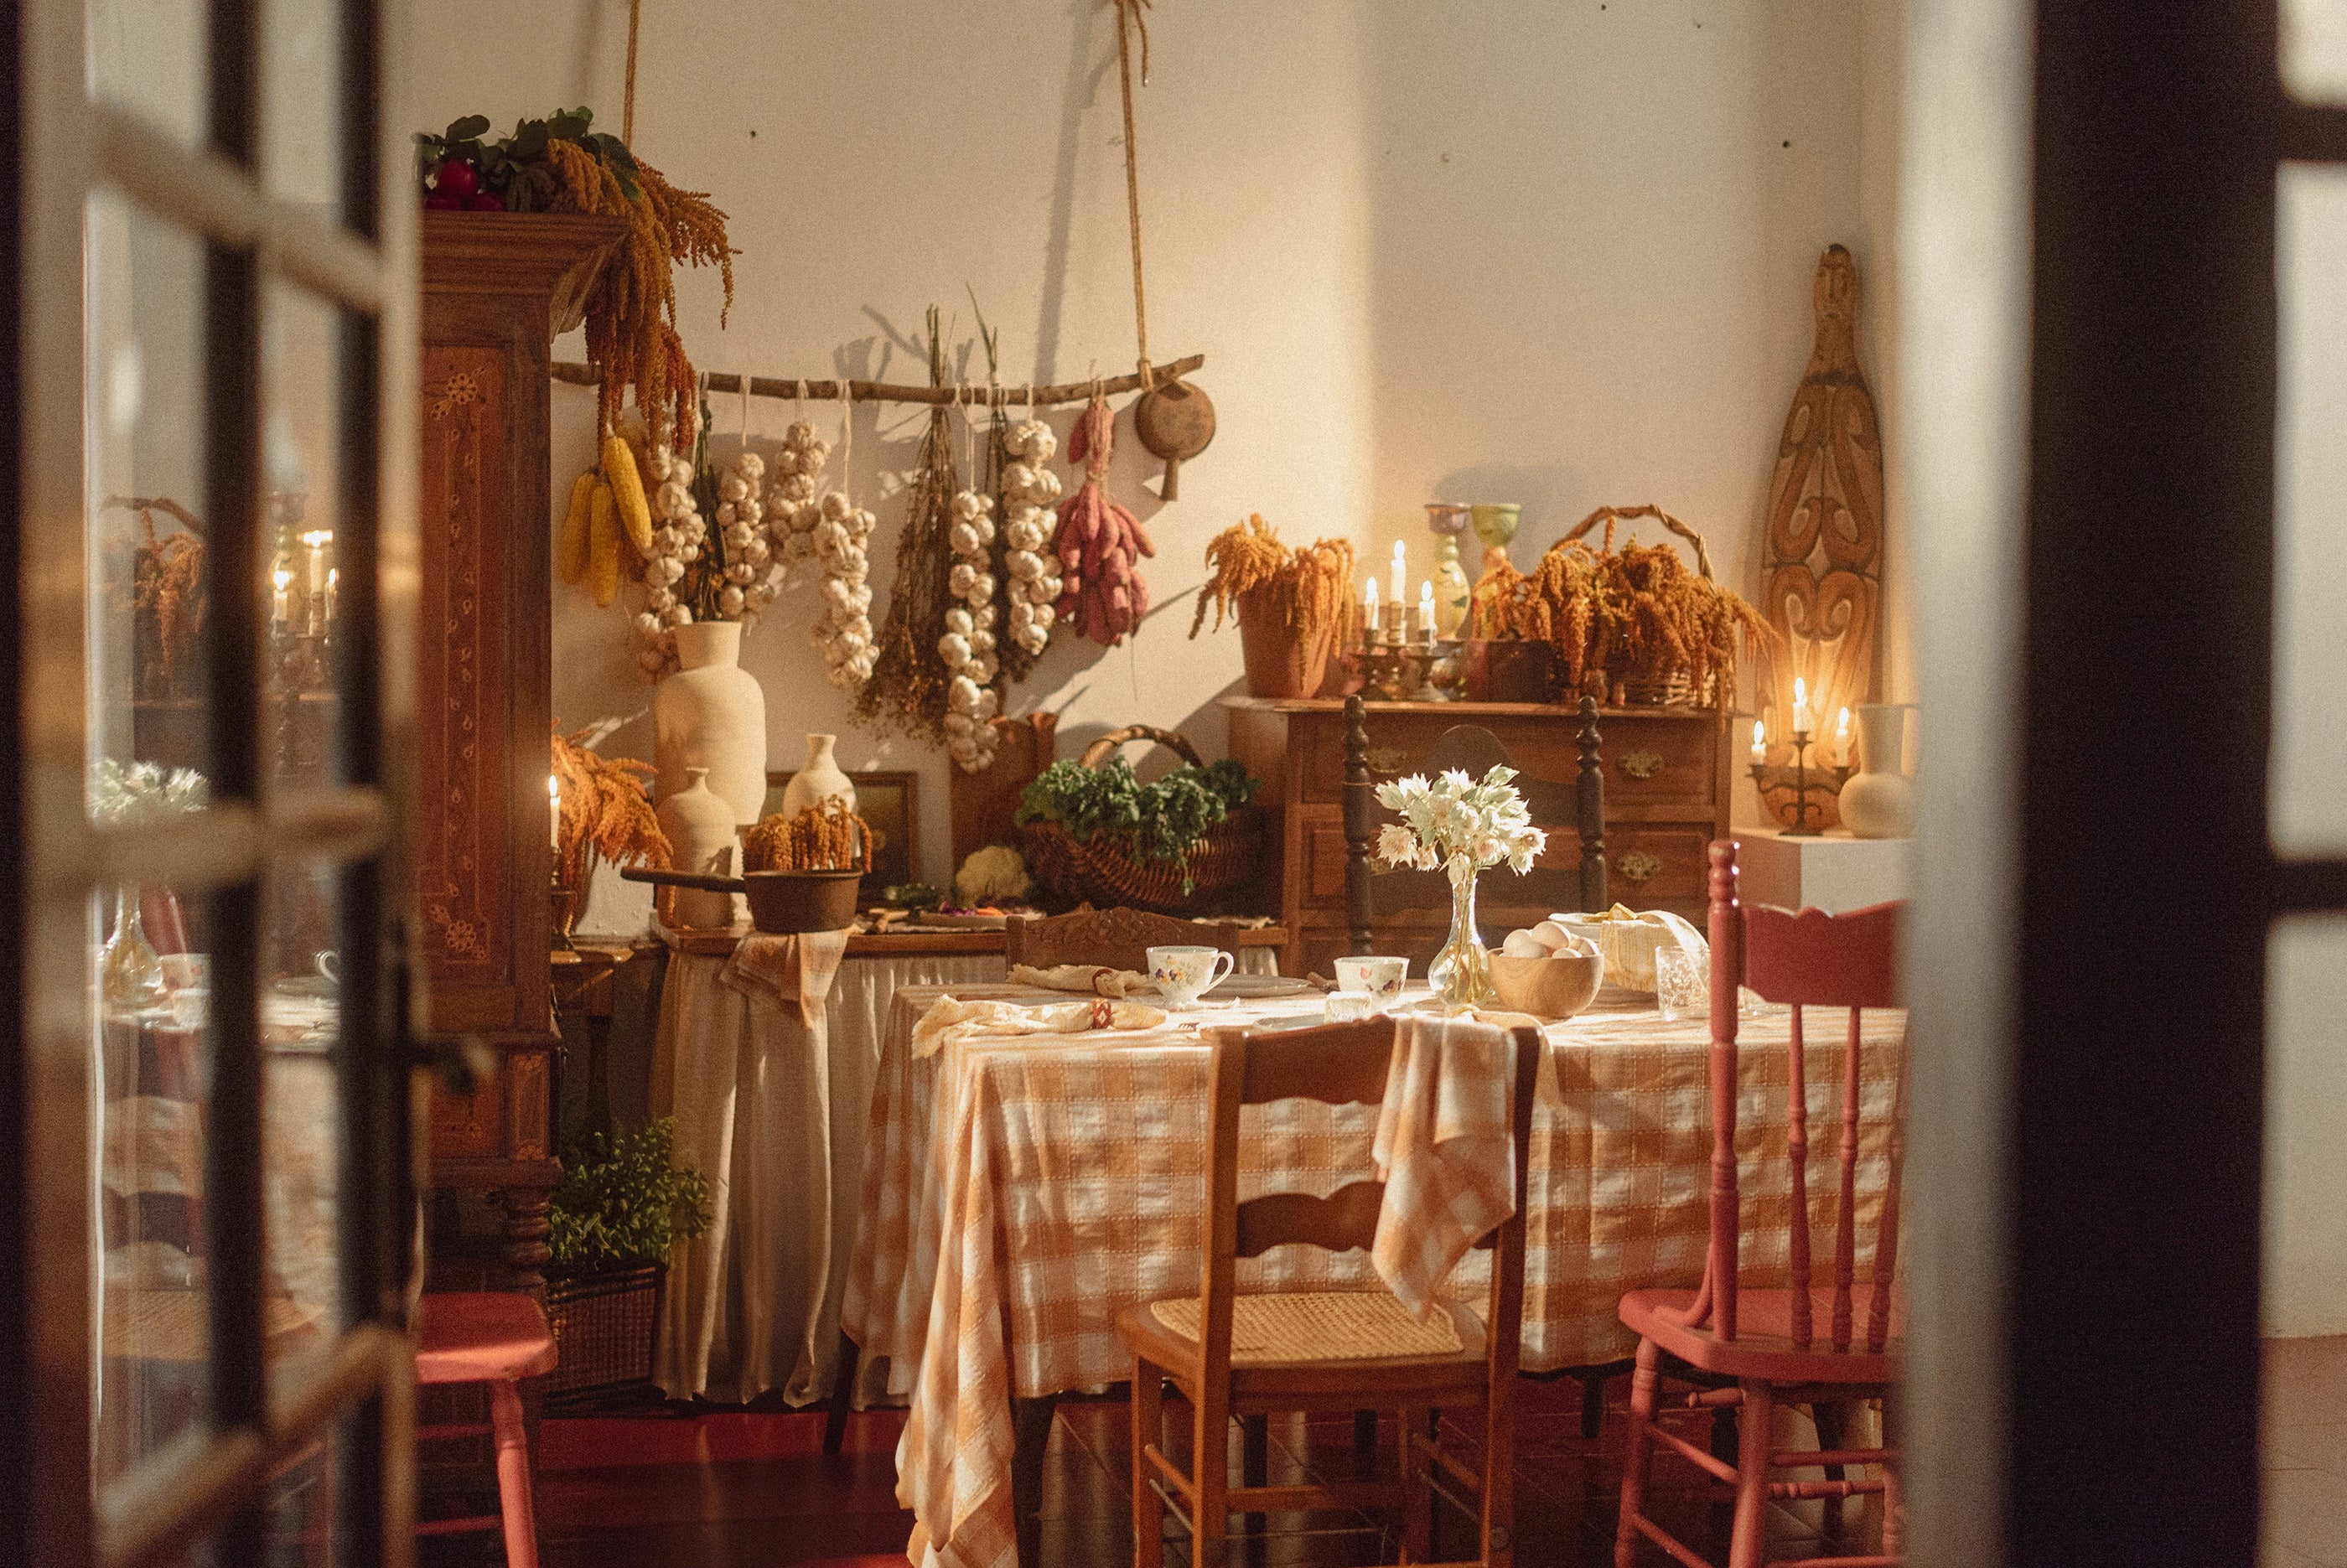 Suasana dapur klasik dengan bunga kering menghiasi dinding, dilengkapi dengan meja makan yang dihiasi taplak meja kotak-kotak berwarna pink.